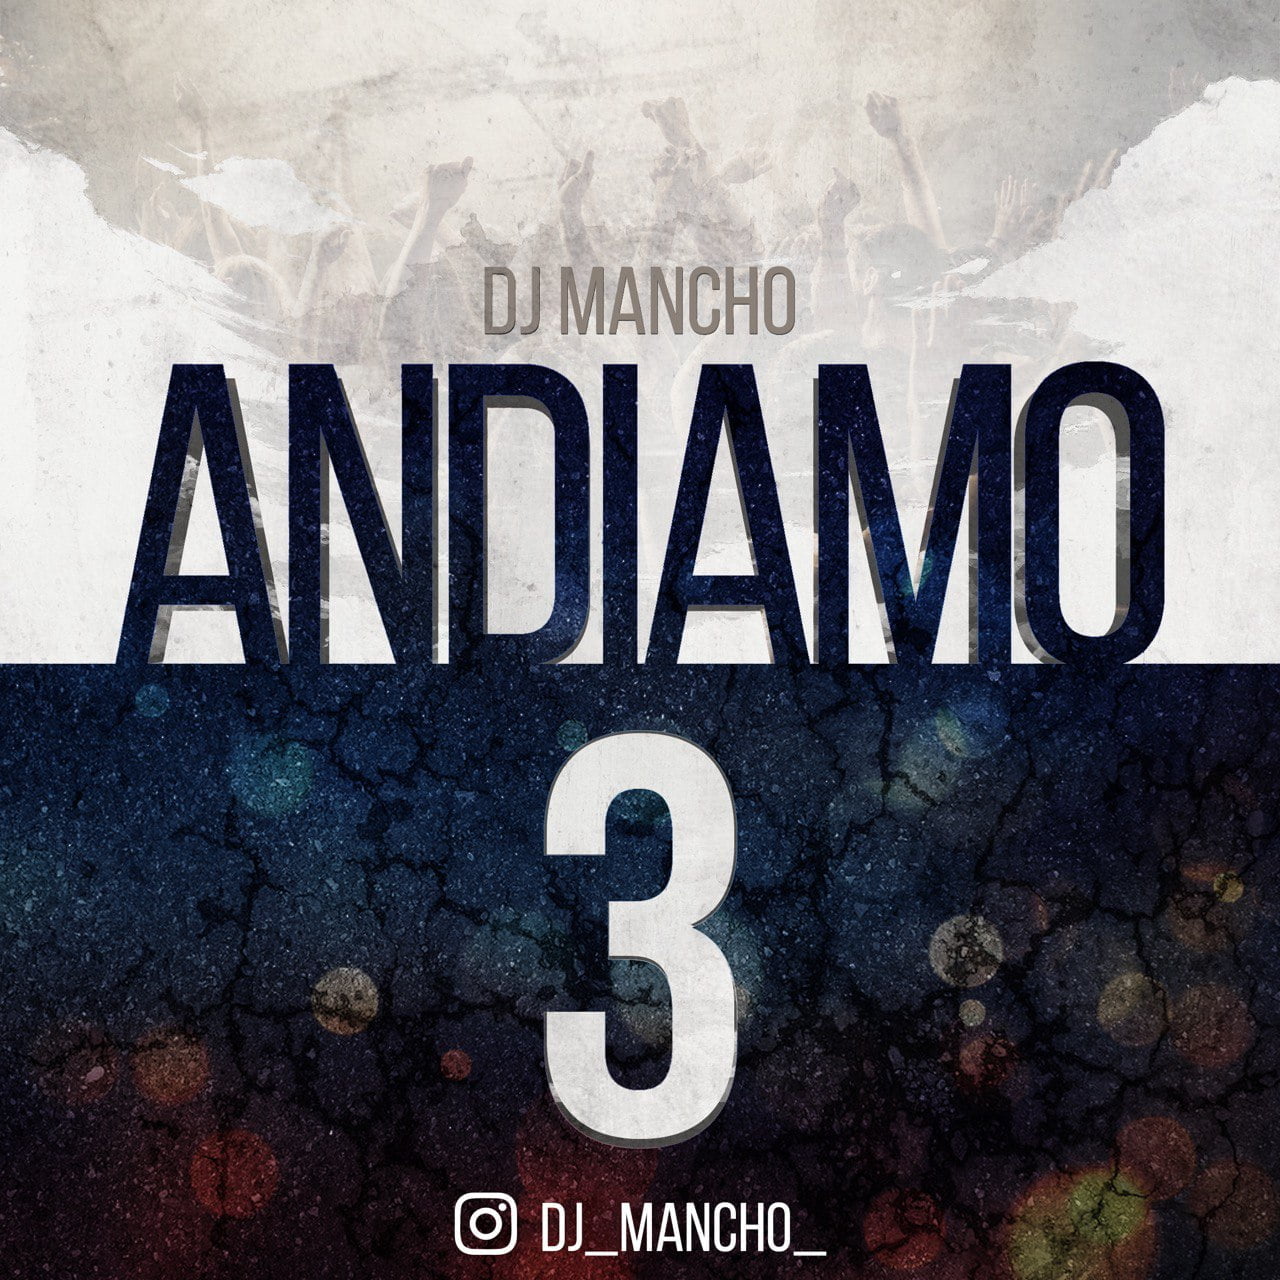 دانلود آهنگ جدید دیجی مانچو با عنوان آندیامو ۳